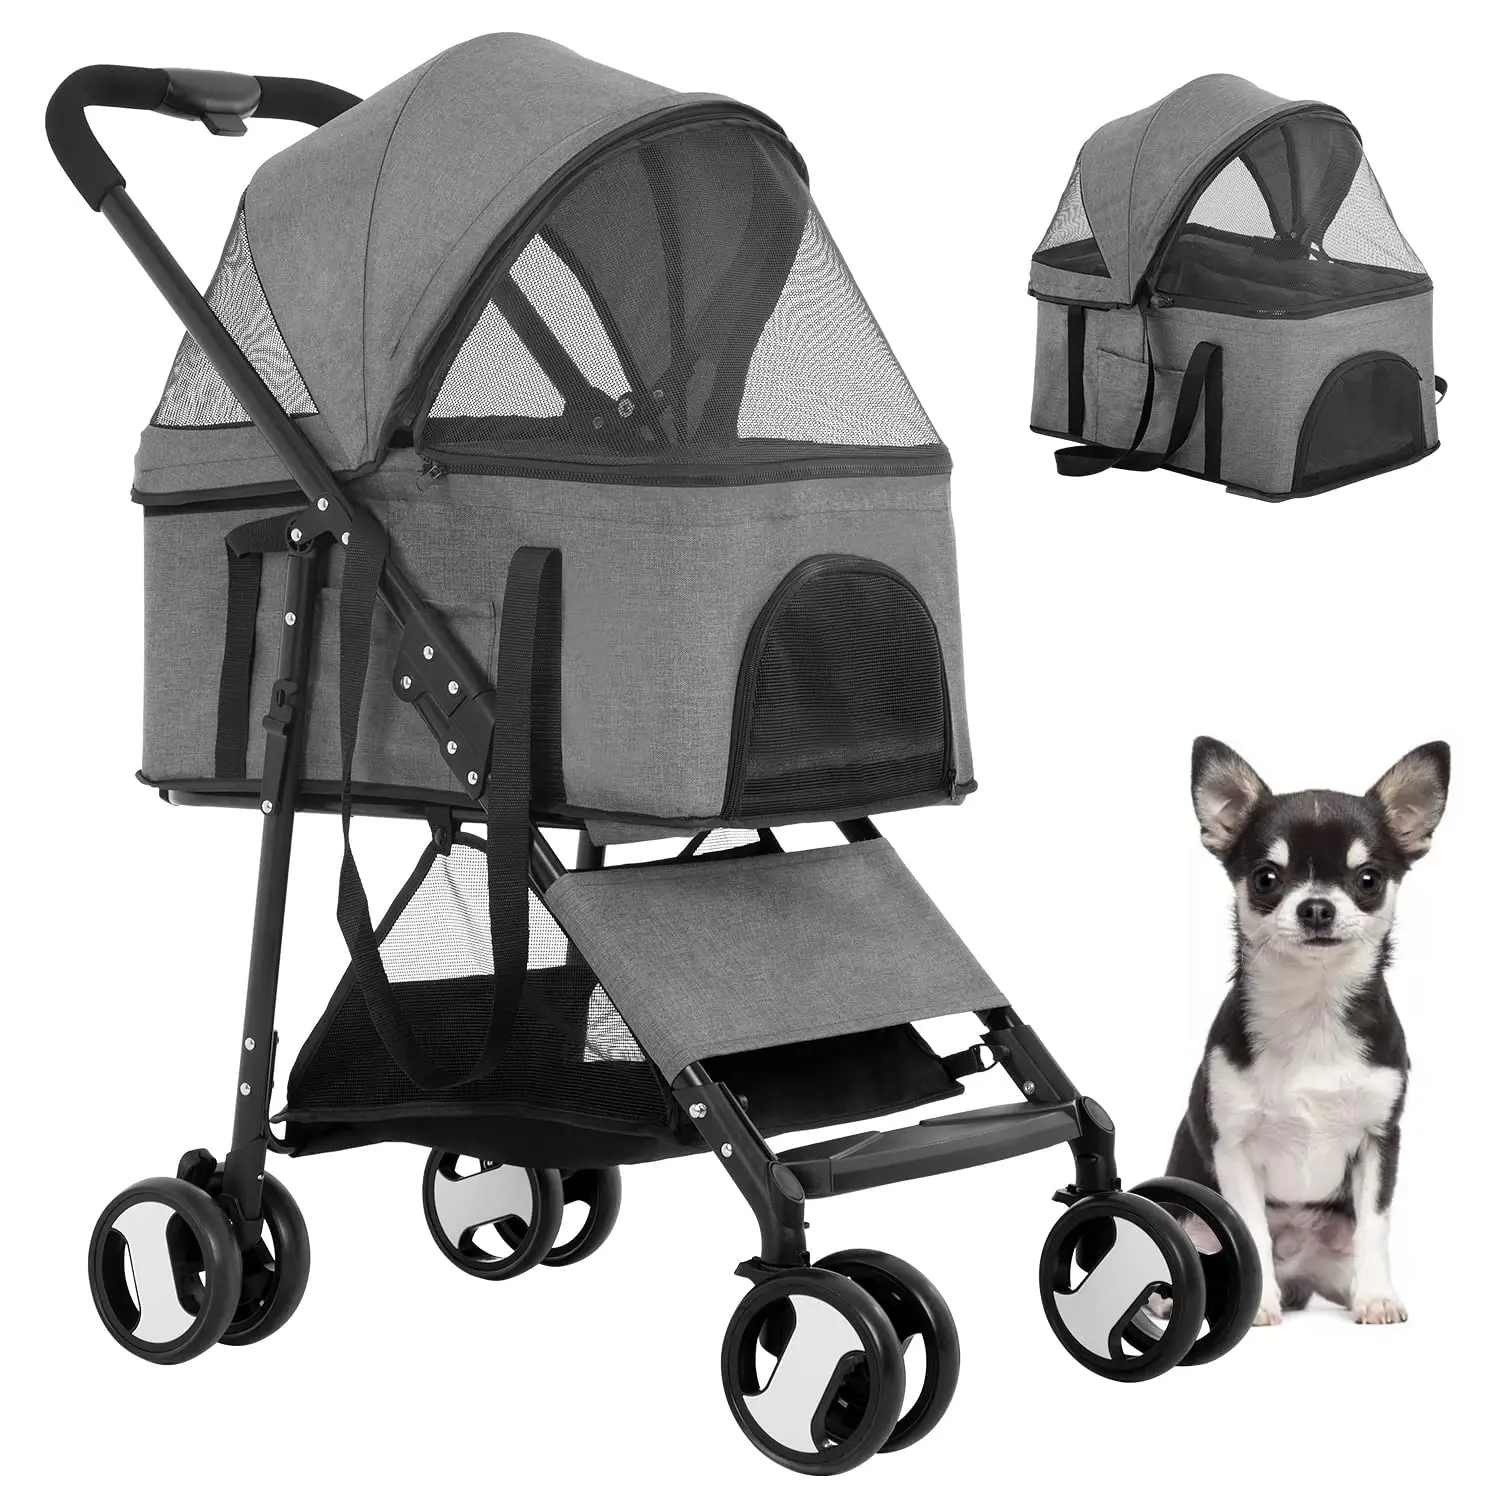 

Коляска BestPet 3-в-1 для домашних животных, многофункциональная детская прогулочная коляска для собак и кошек, Складная легкая для путешествий